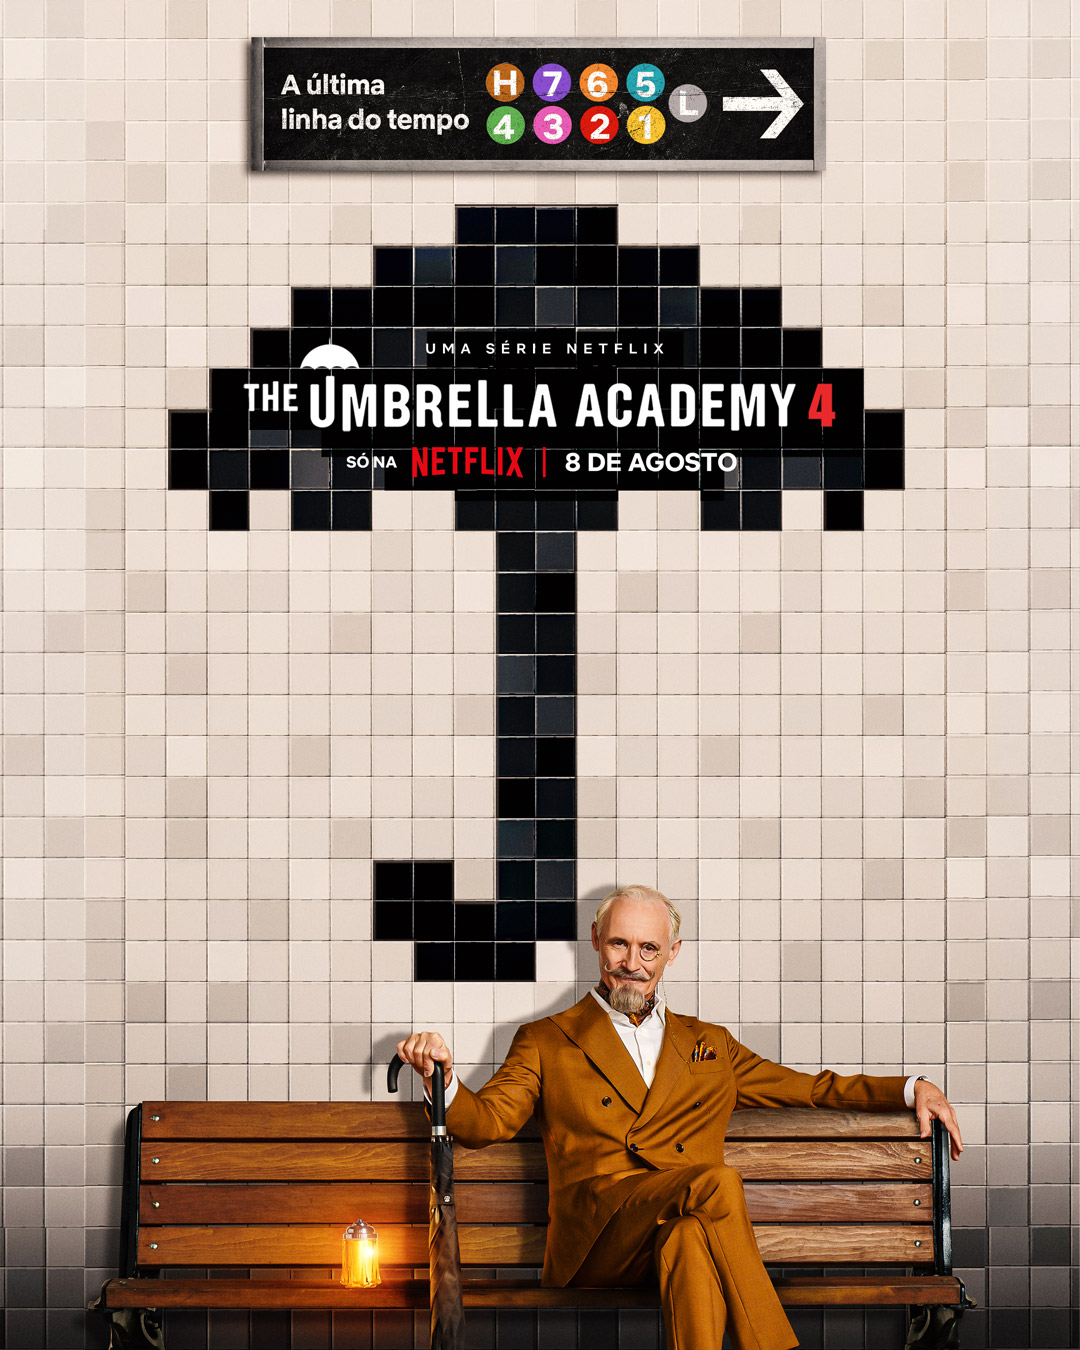 Novos pôsteres de personagens para a 4ª temporada de The Umbrella Academy, que estreia dia 8 de agosto, foram revelados.